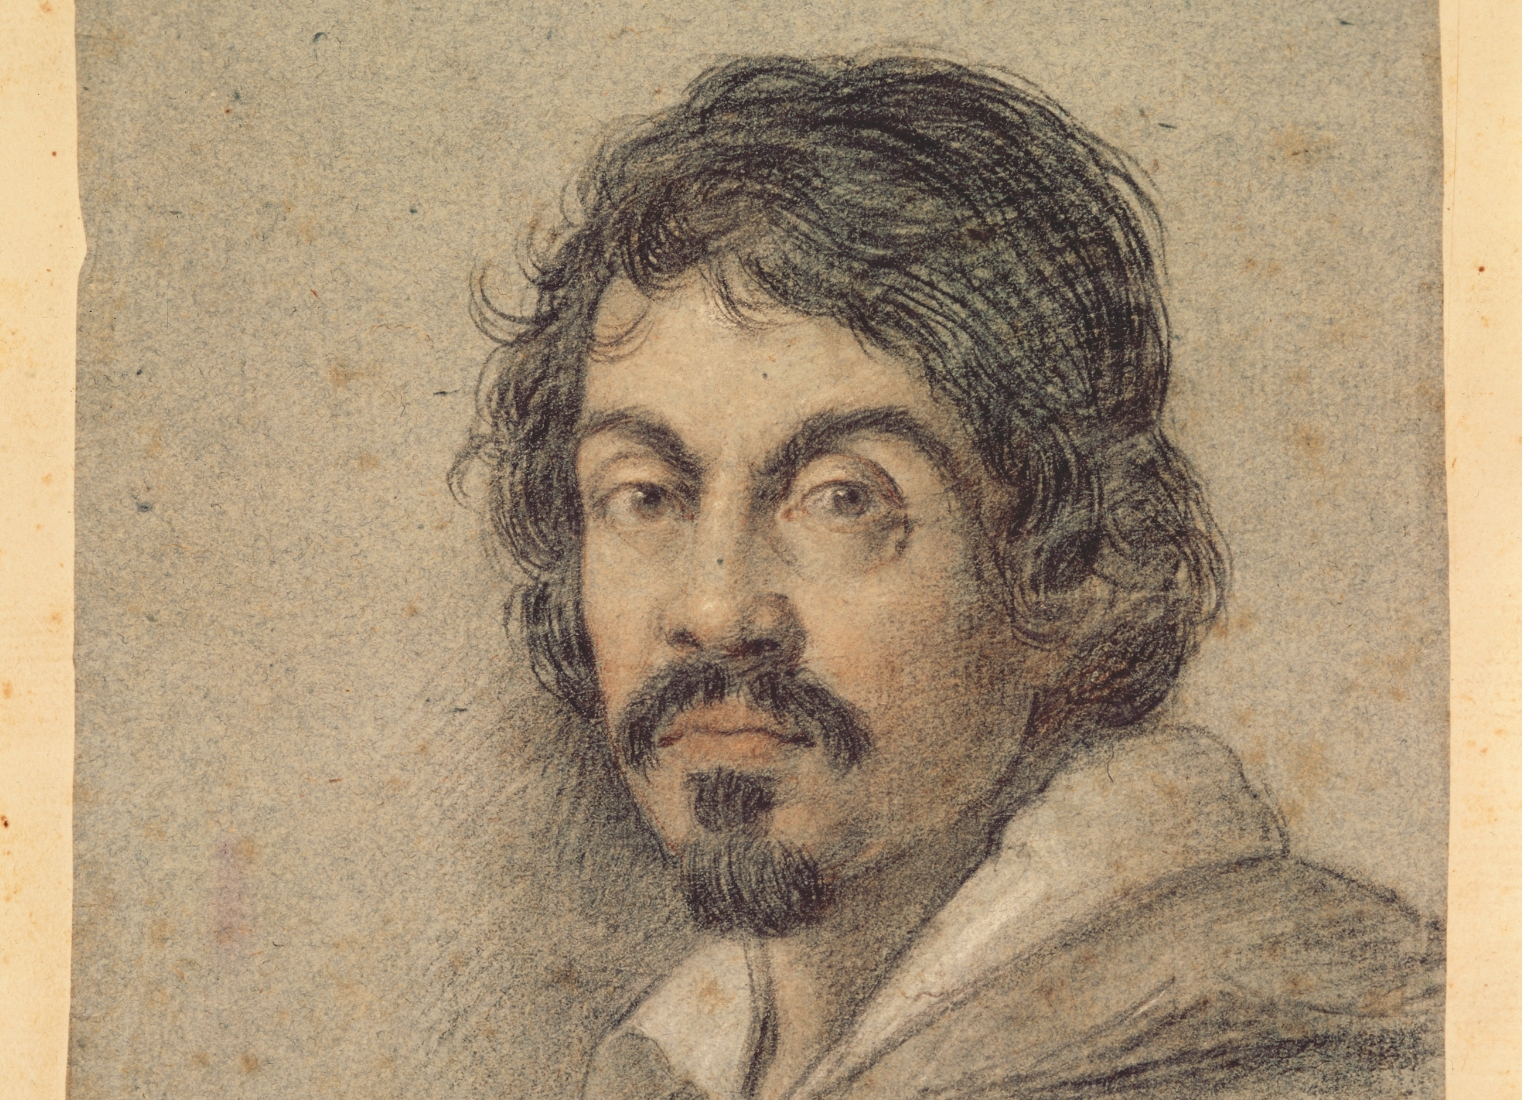 illustrated portrait of Caravaggio by Ottavio Leoni